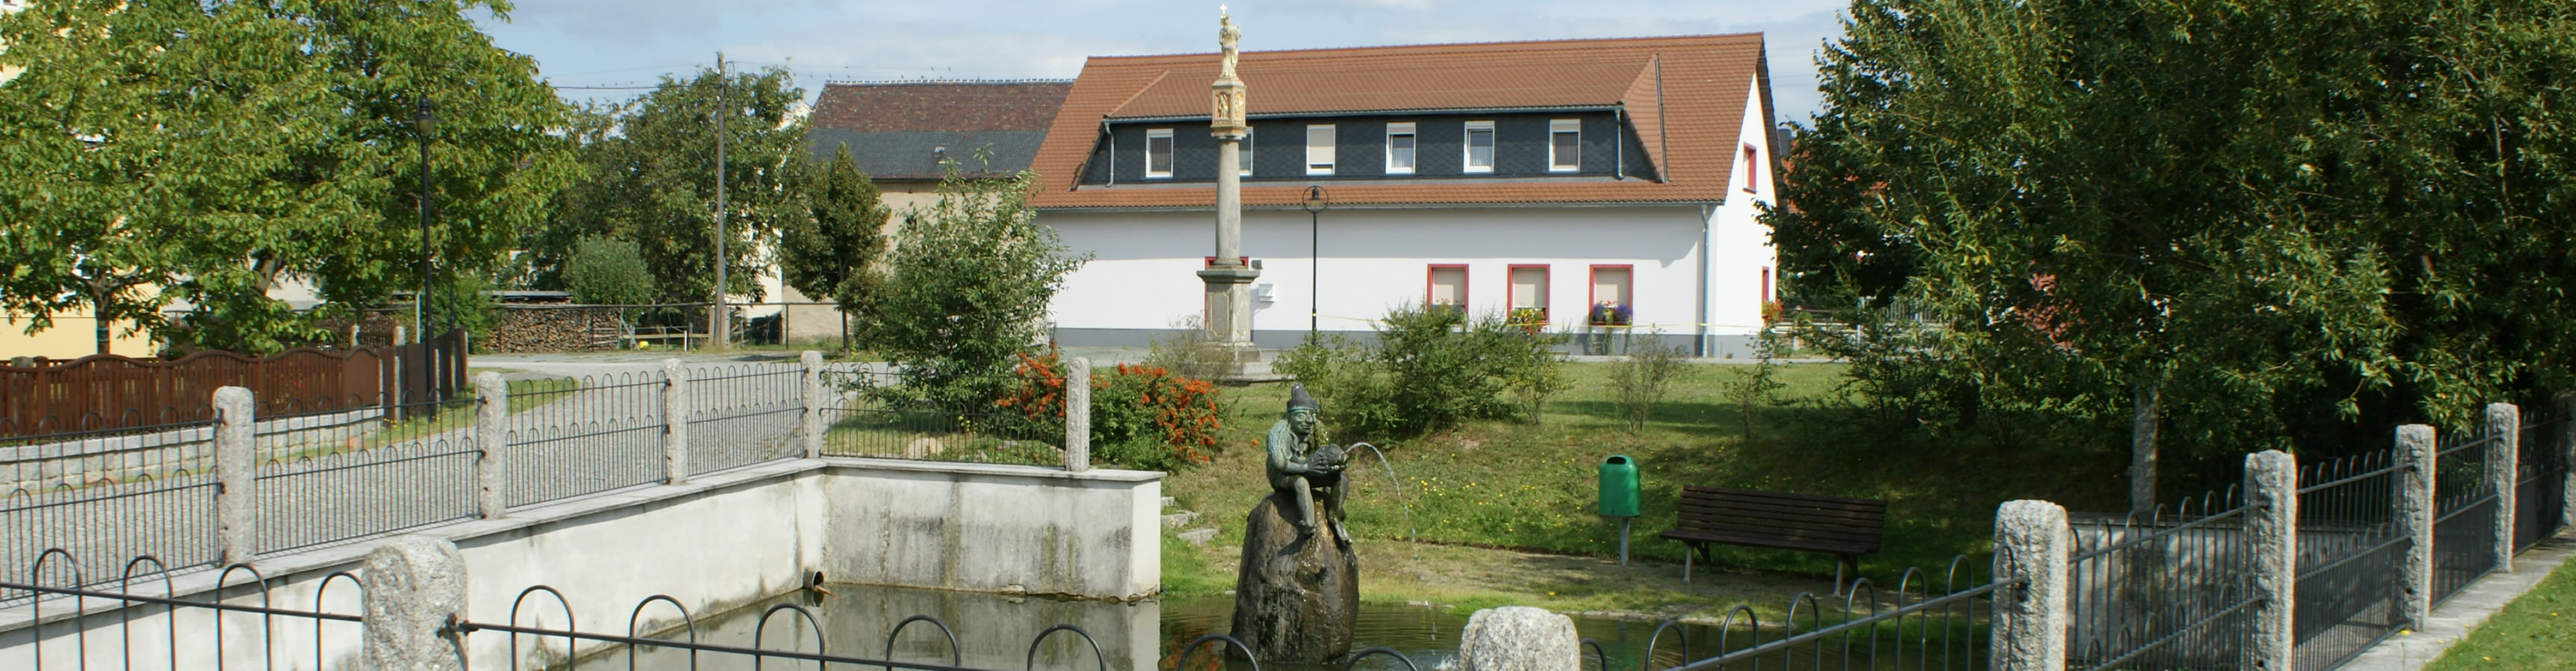 wittichenau, tracht, trachtenträgerin, sorbische tracht, sorbischer brauch, Klosters St. Marienstern, agrar